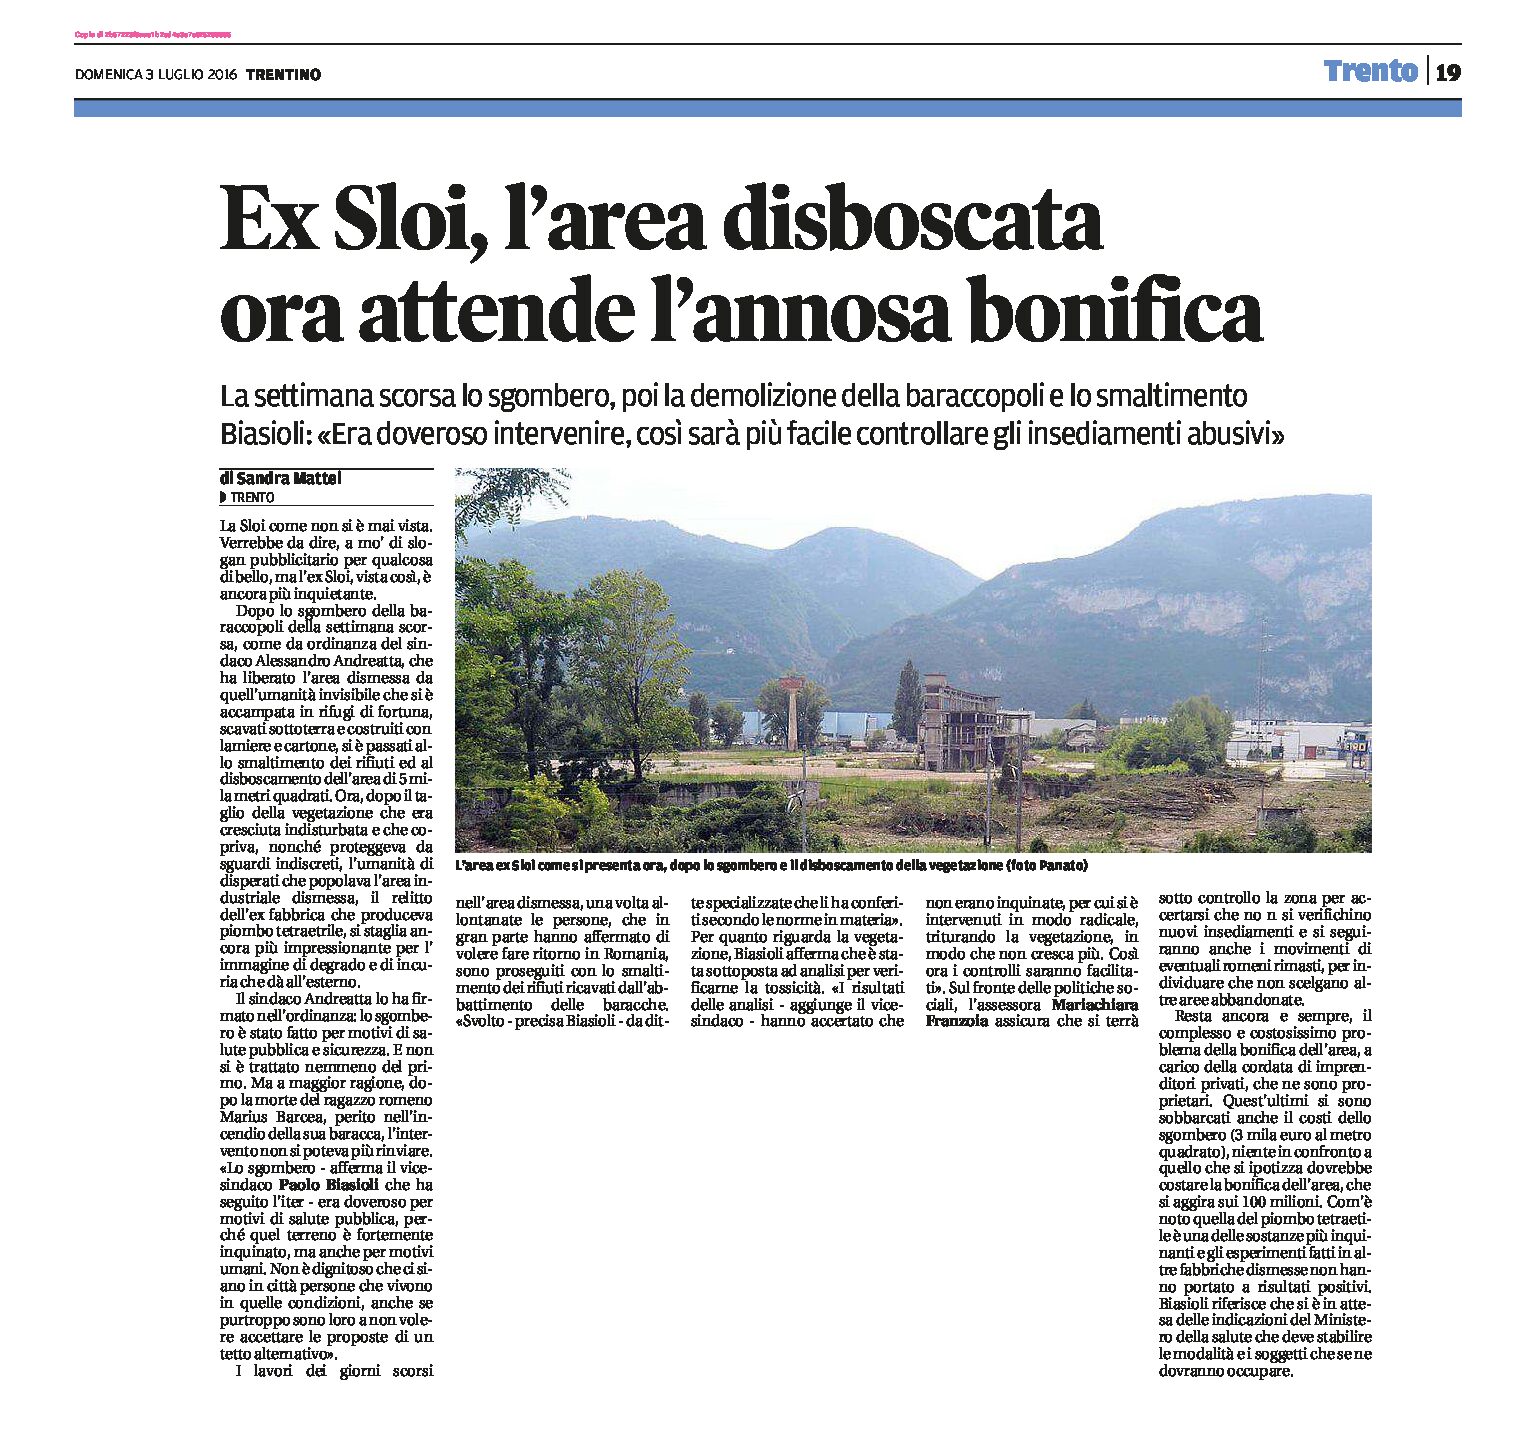 Trento, ex Sloi: l’area disboscata attende l’annosa bonifica